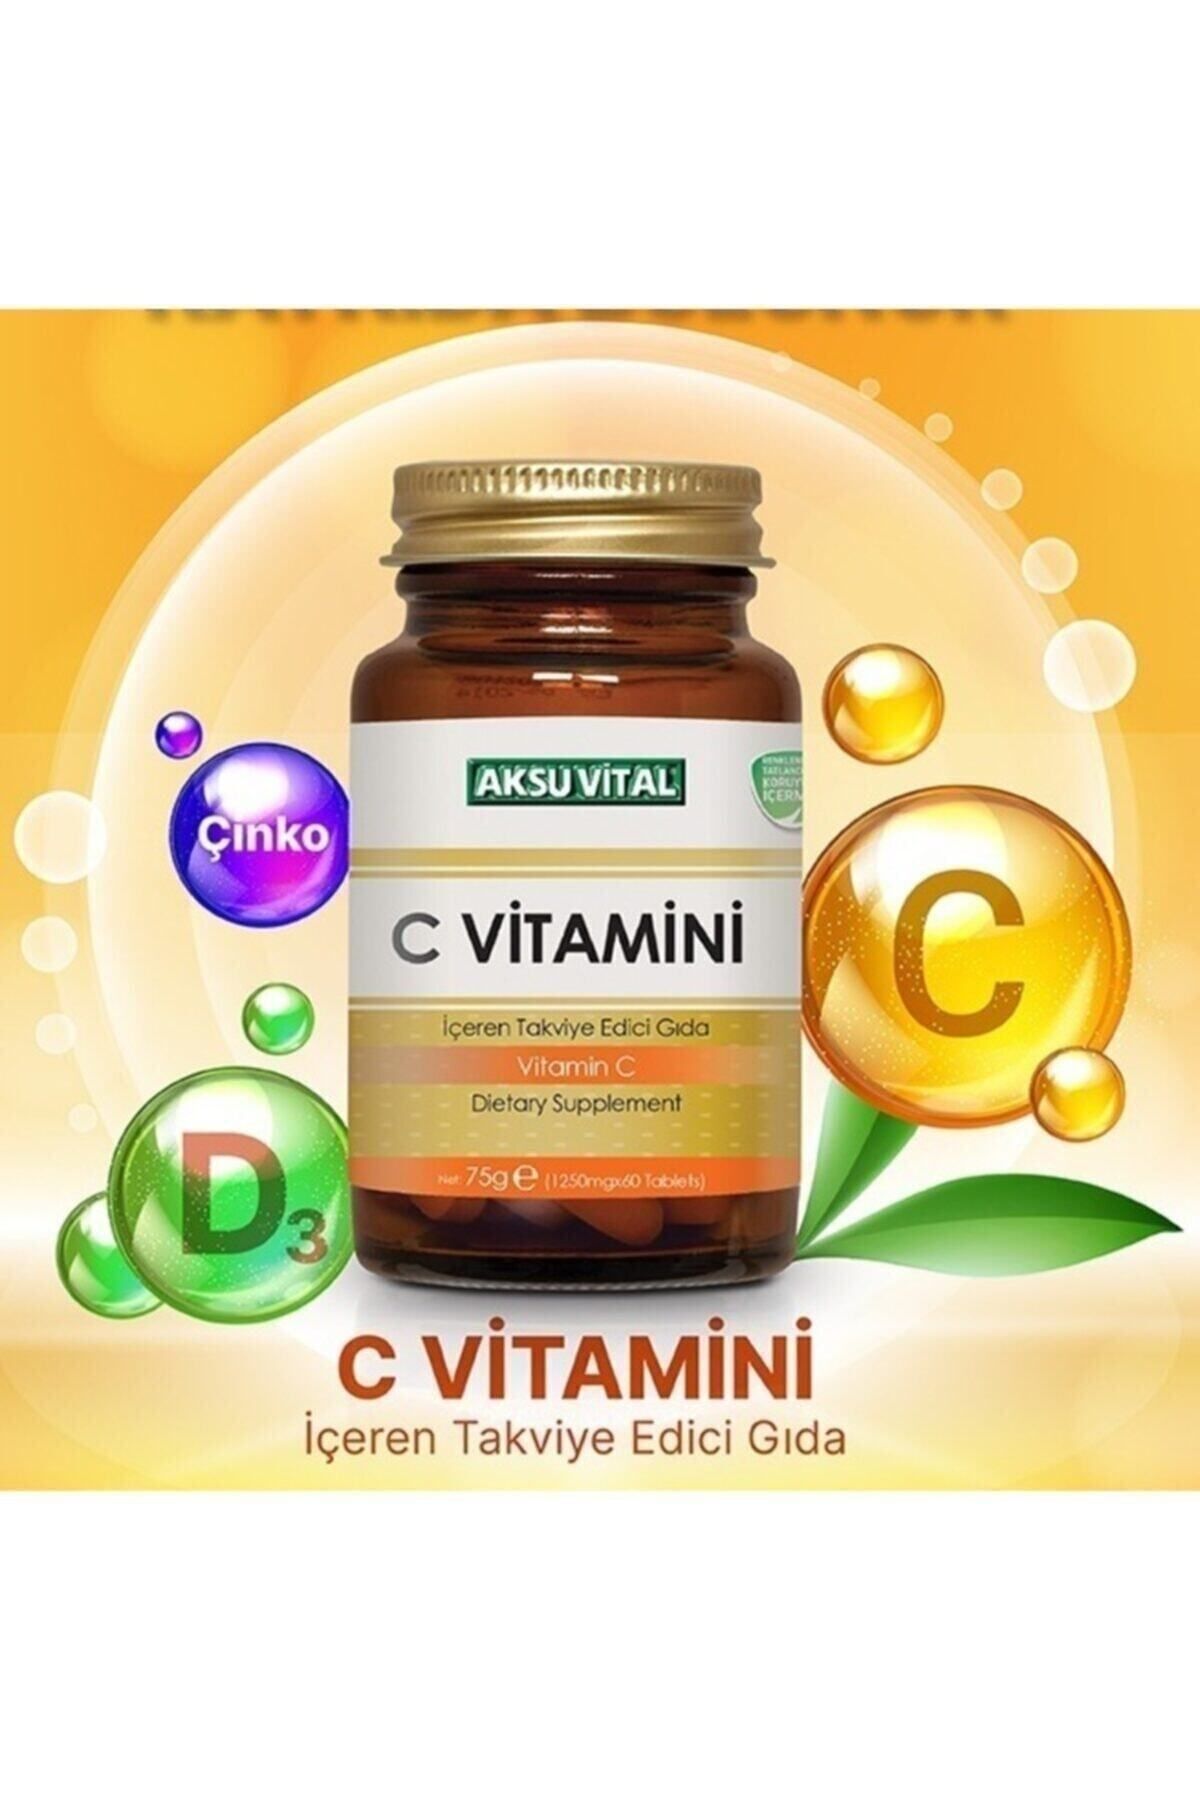 Shiffa Home C Vitamini Aksuvital 1250 Mg 60 Tablet 1 Kapsül 13 Portakala Eşdeğer